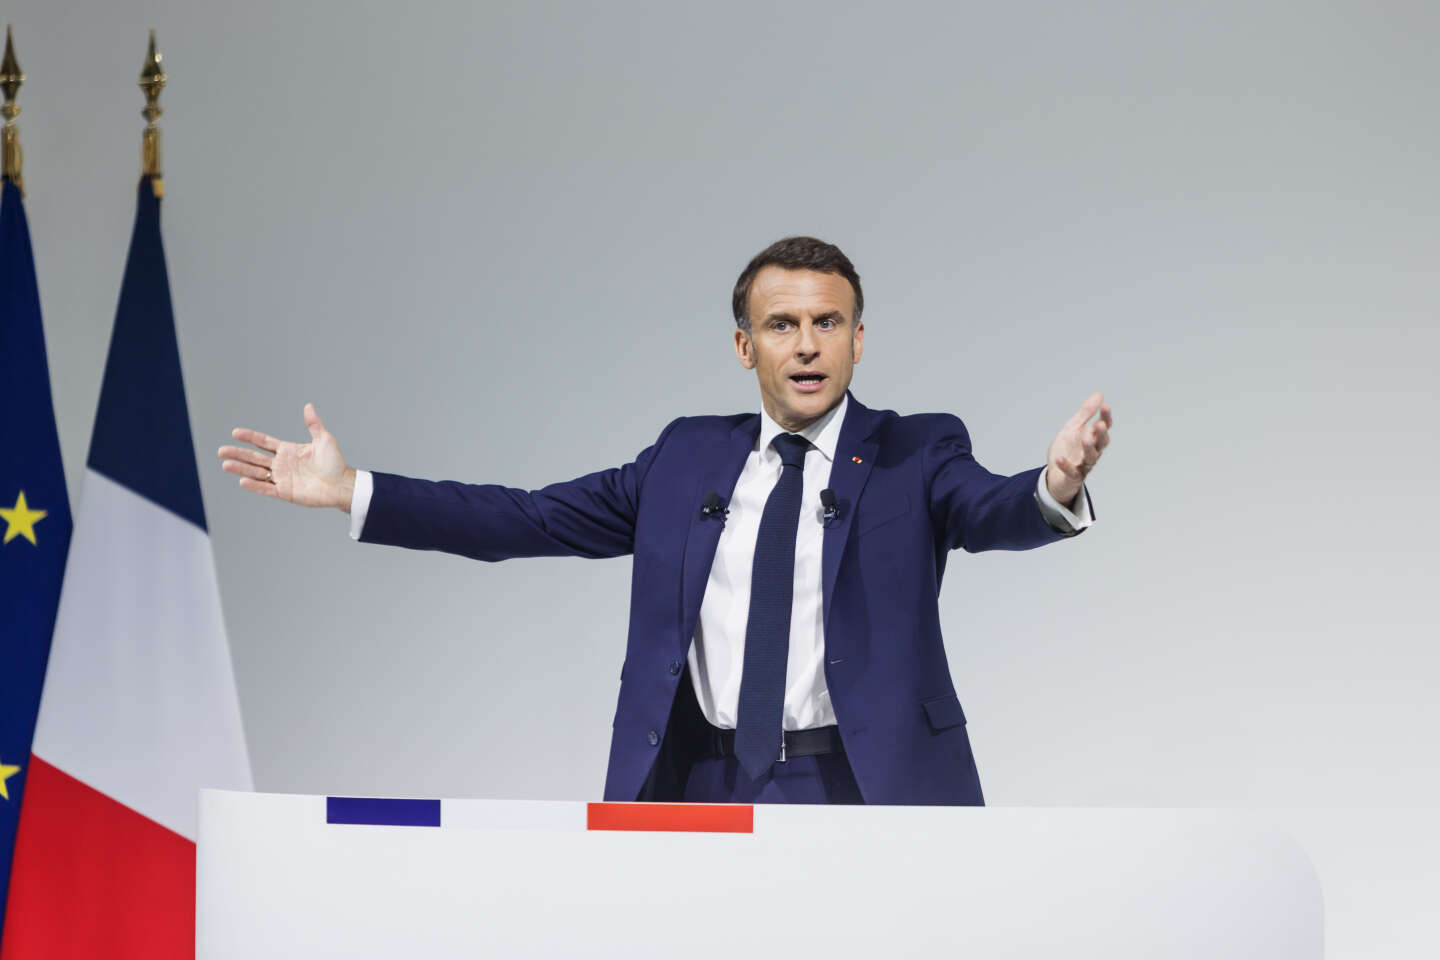 Regarder la vidéo En Europe, la dissolution décidée par Emmanuel Macron inquiète les uns et réjouit les autres